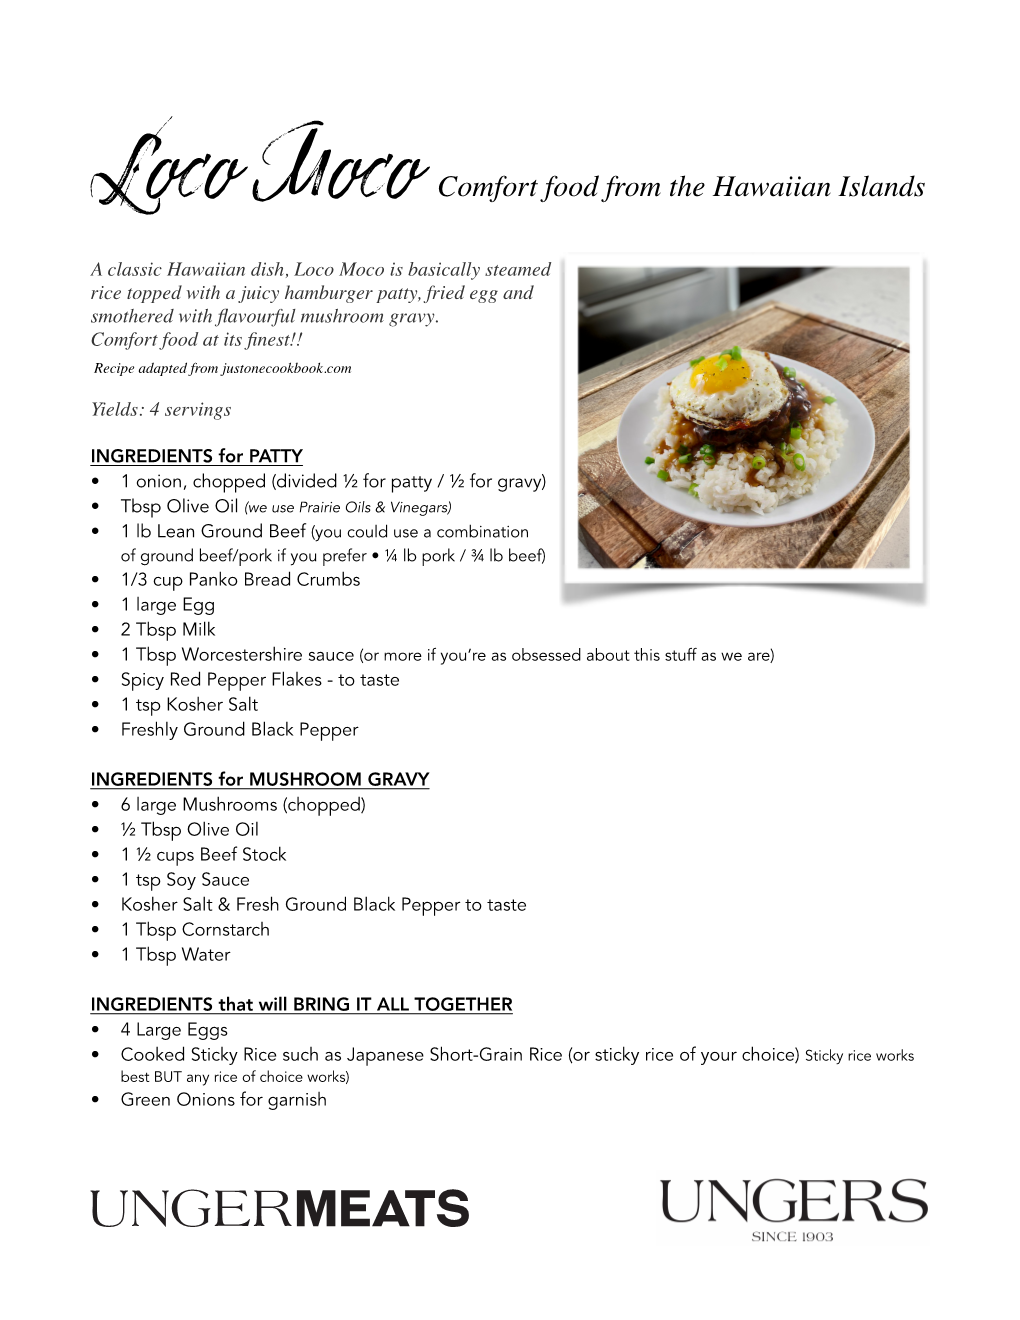 Loco Moco Comfort Food from the Hawaiian Islands